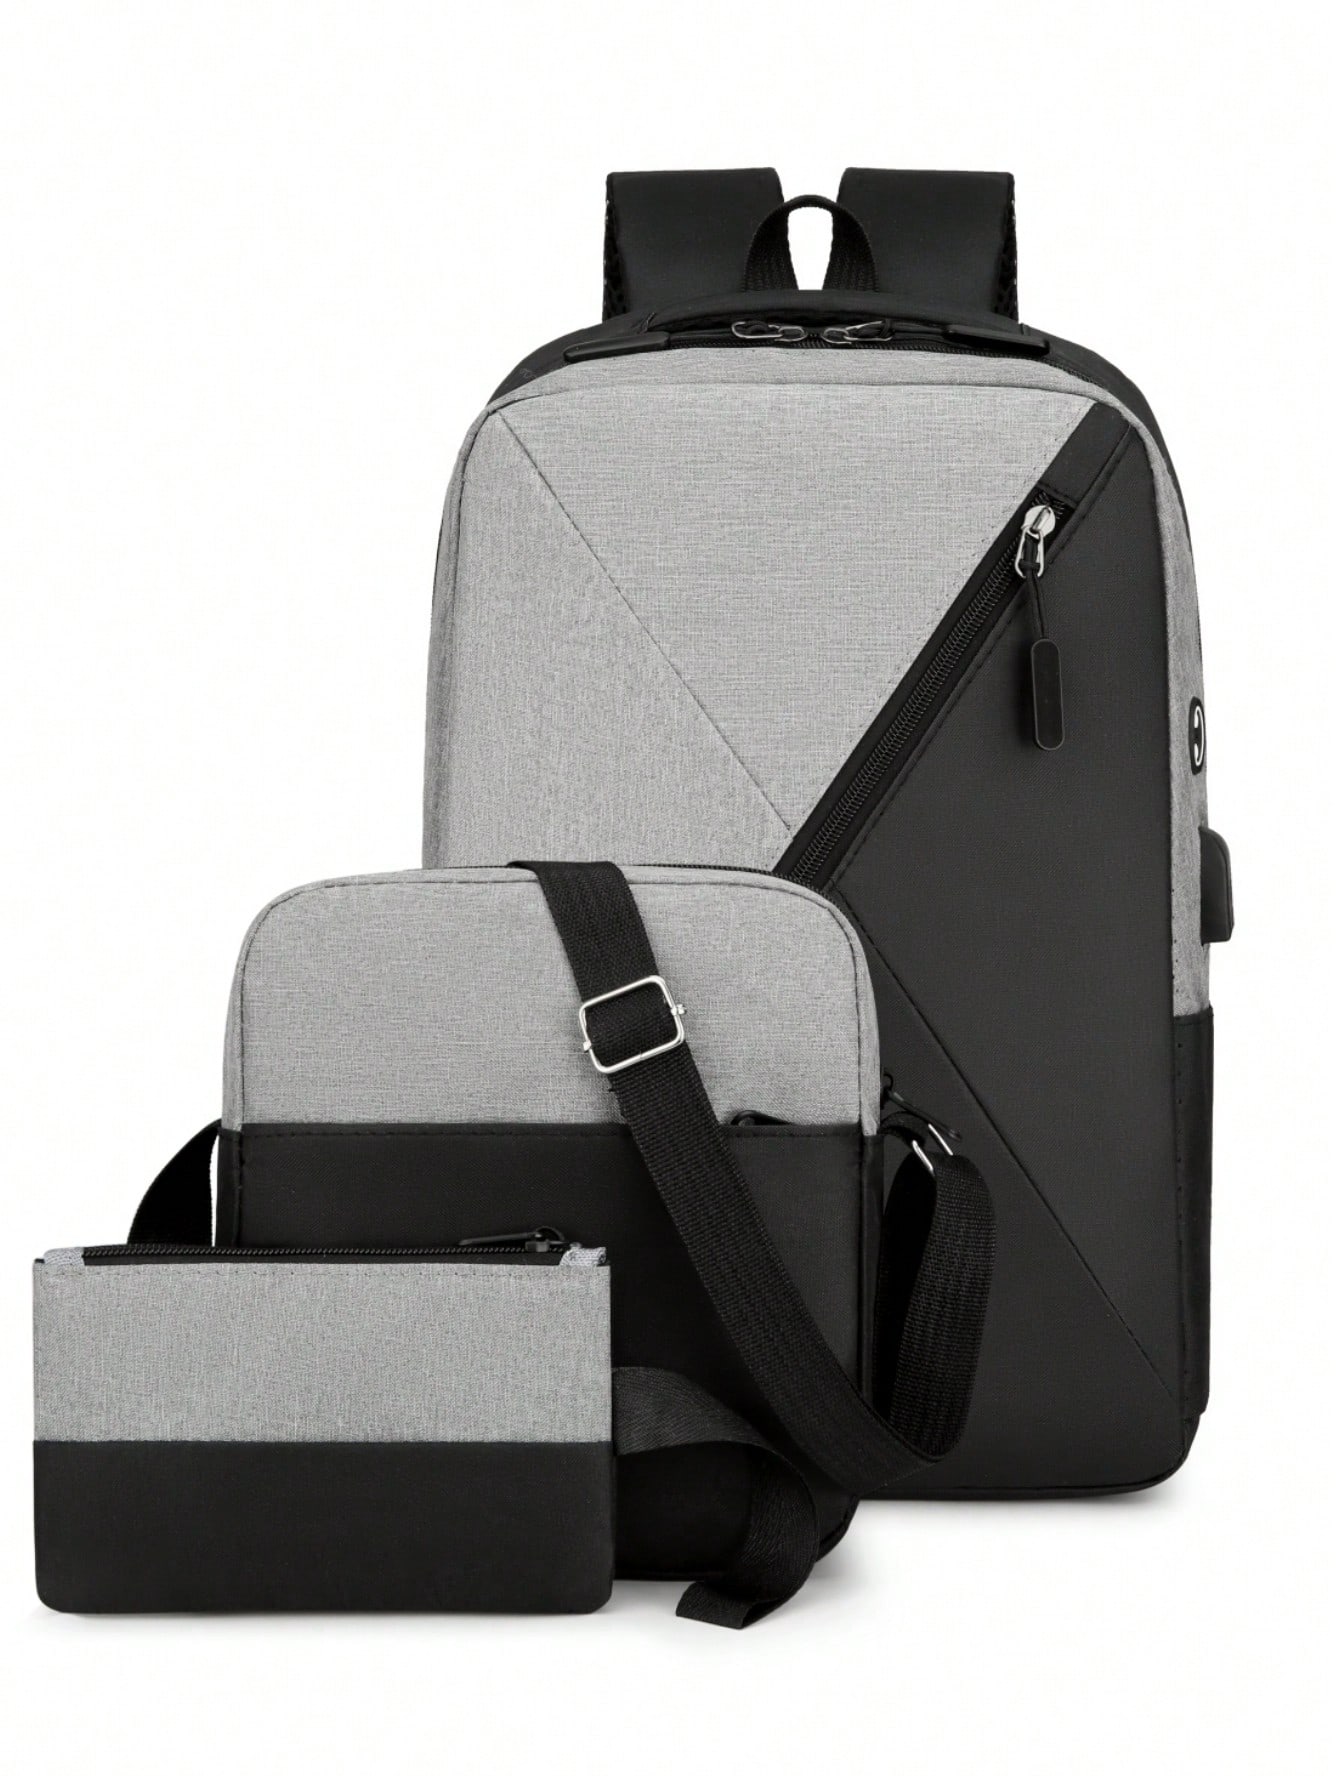 Мужской рюкзак с несколькими отделениями для путешествий на открытом воздухе, светло-серый